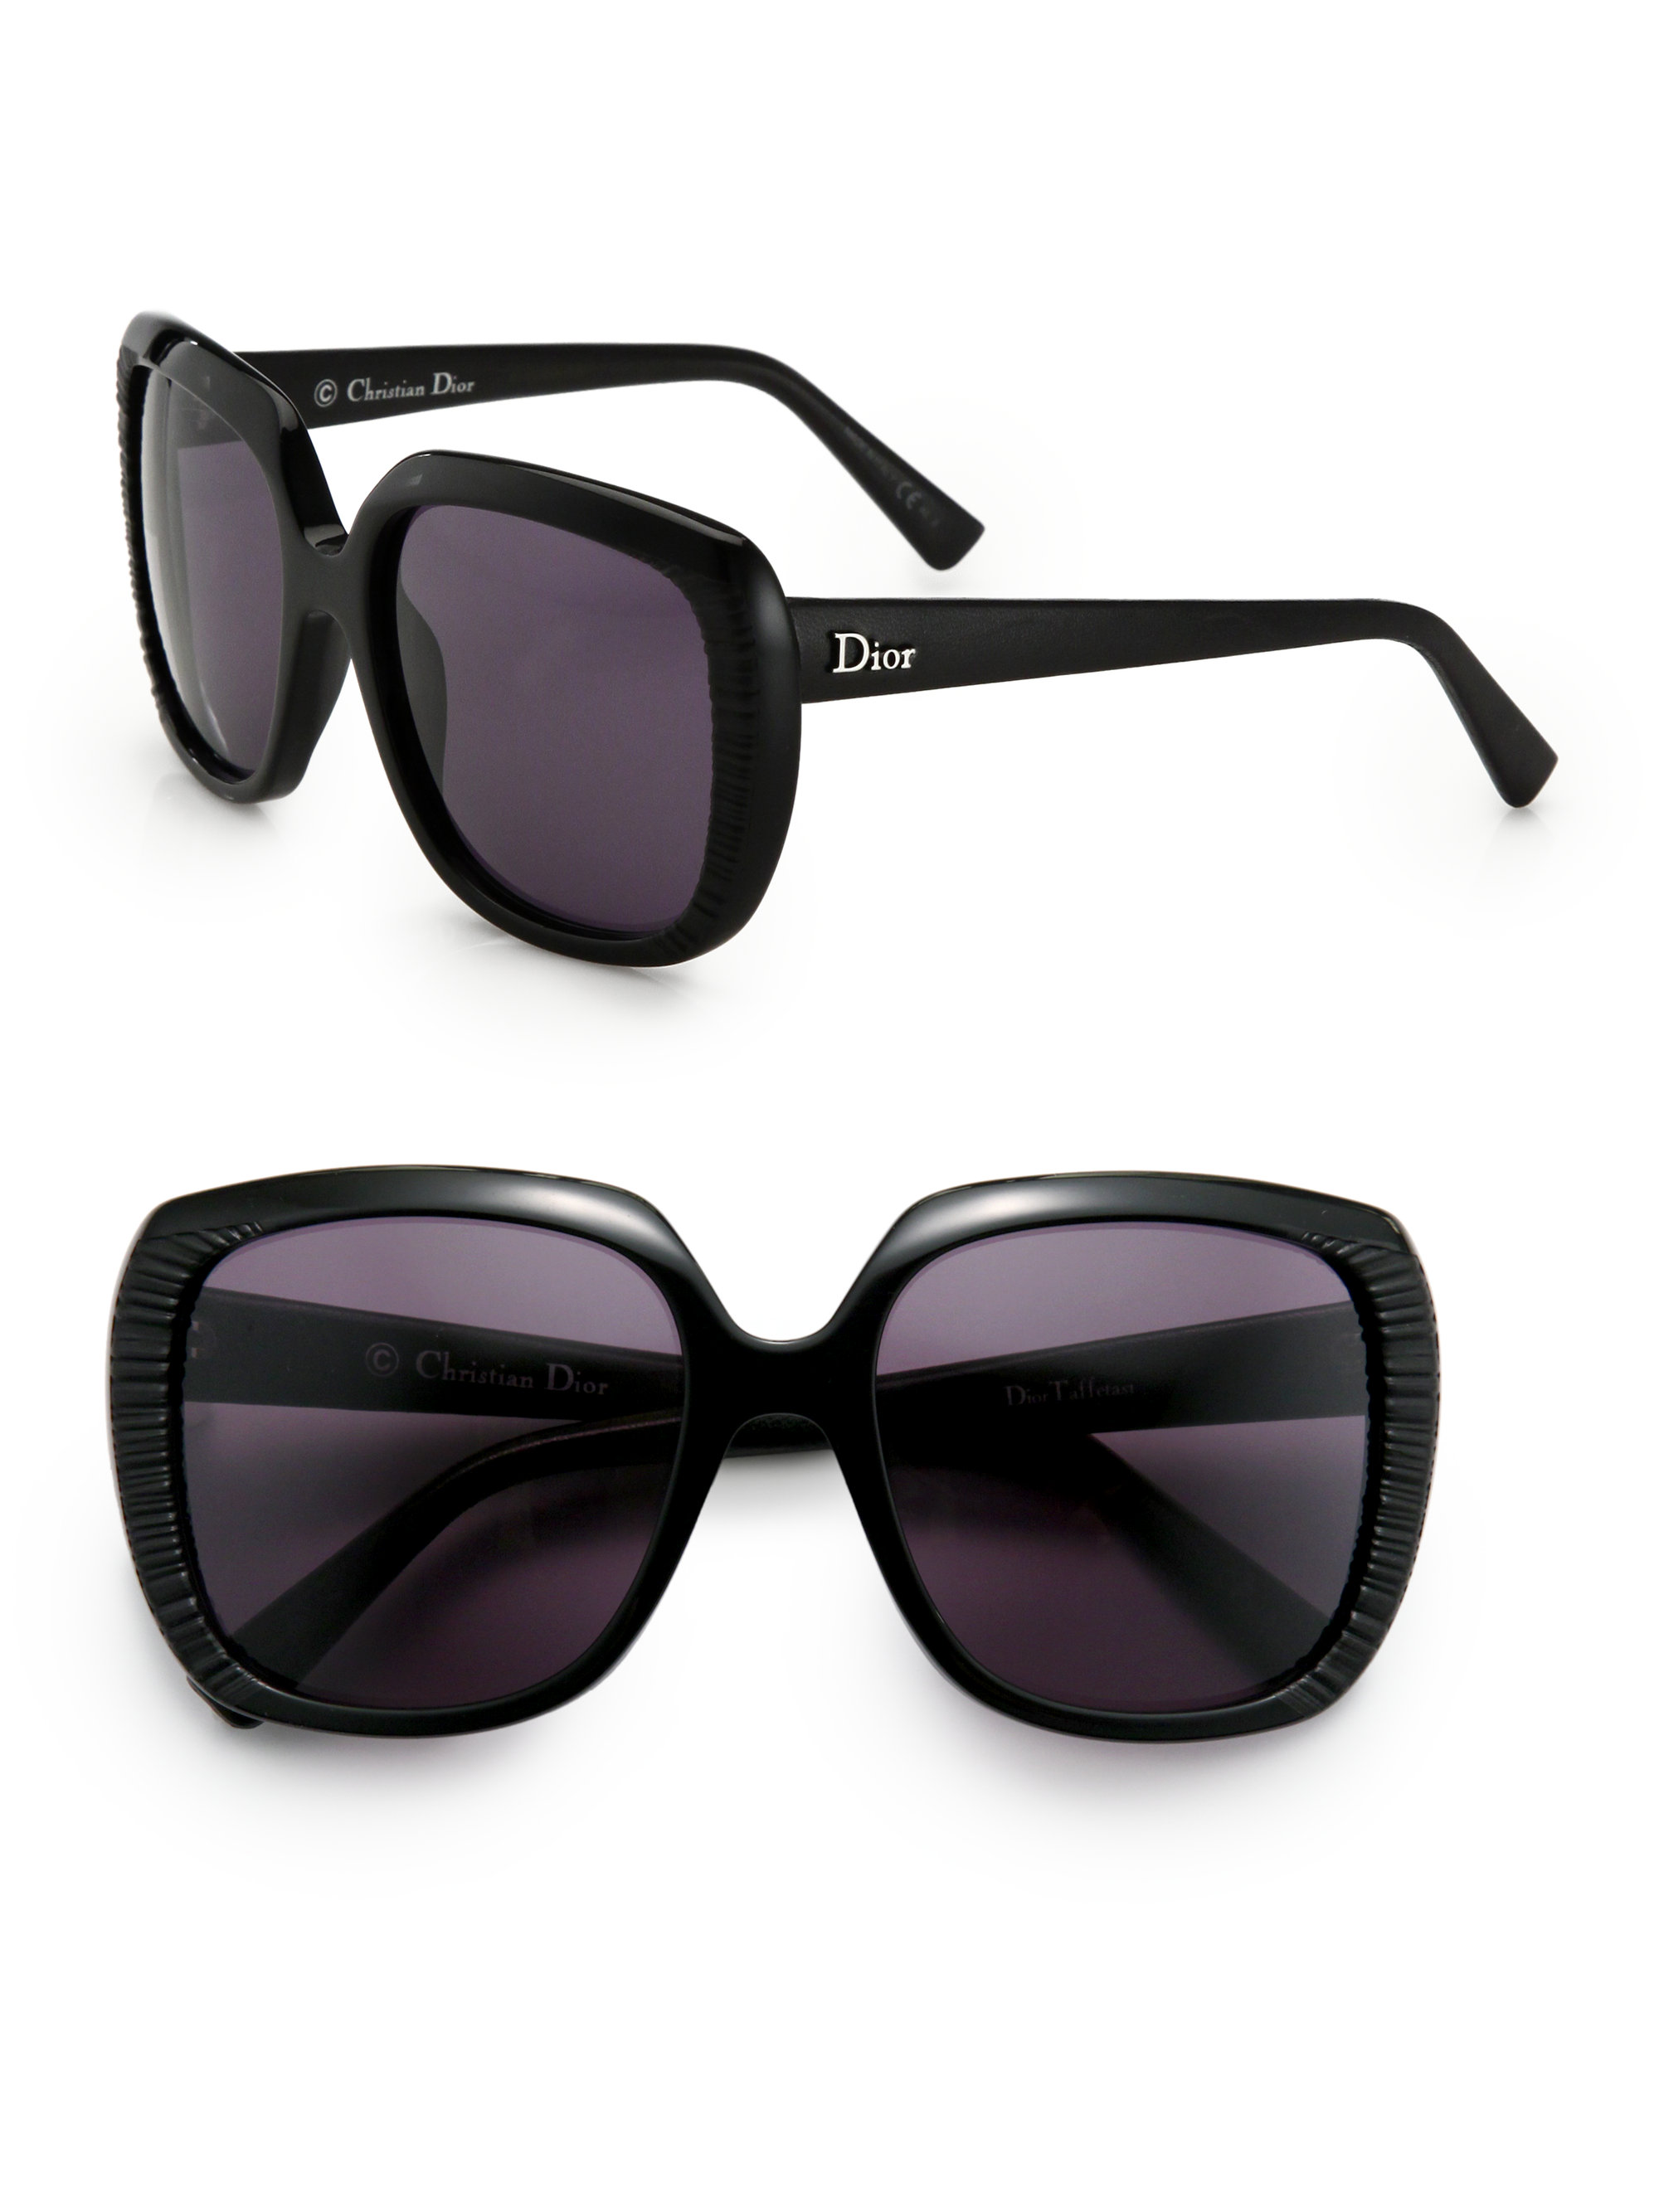 Lyst - Dior Taffetas Square Sunglasses in Black